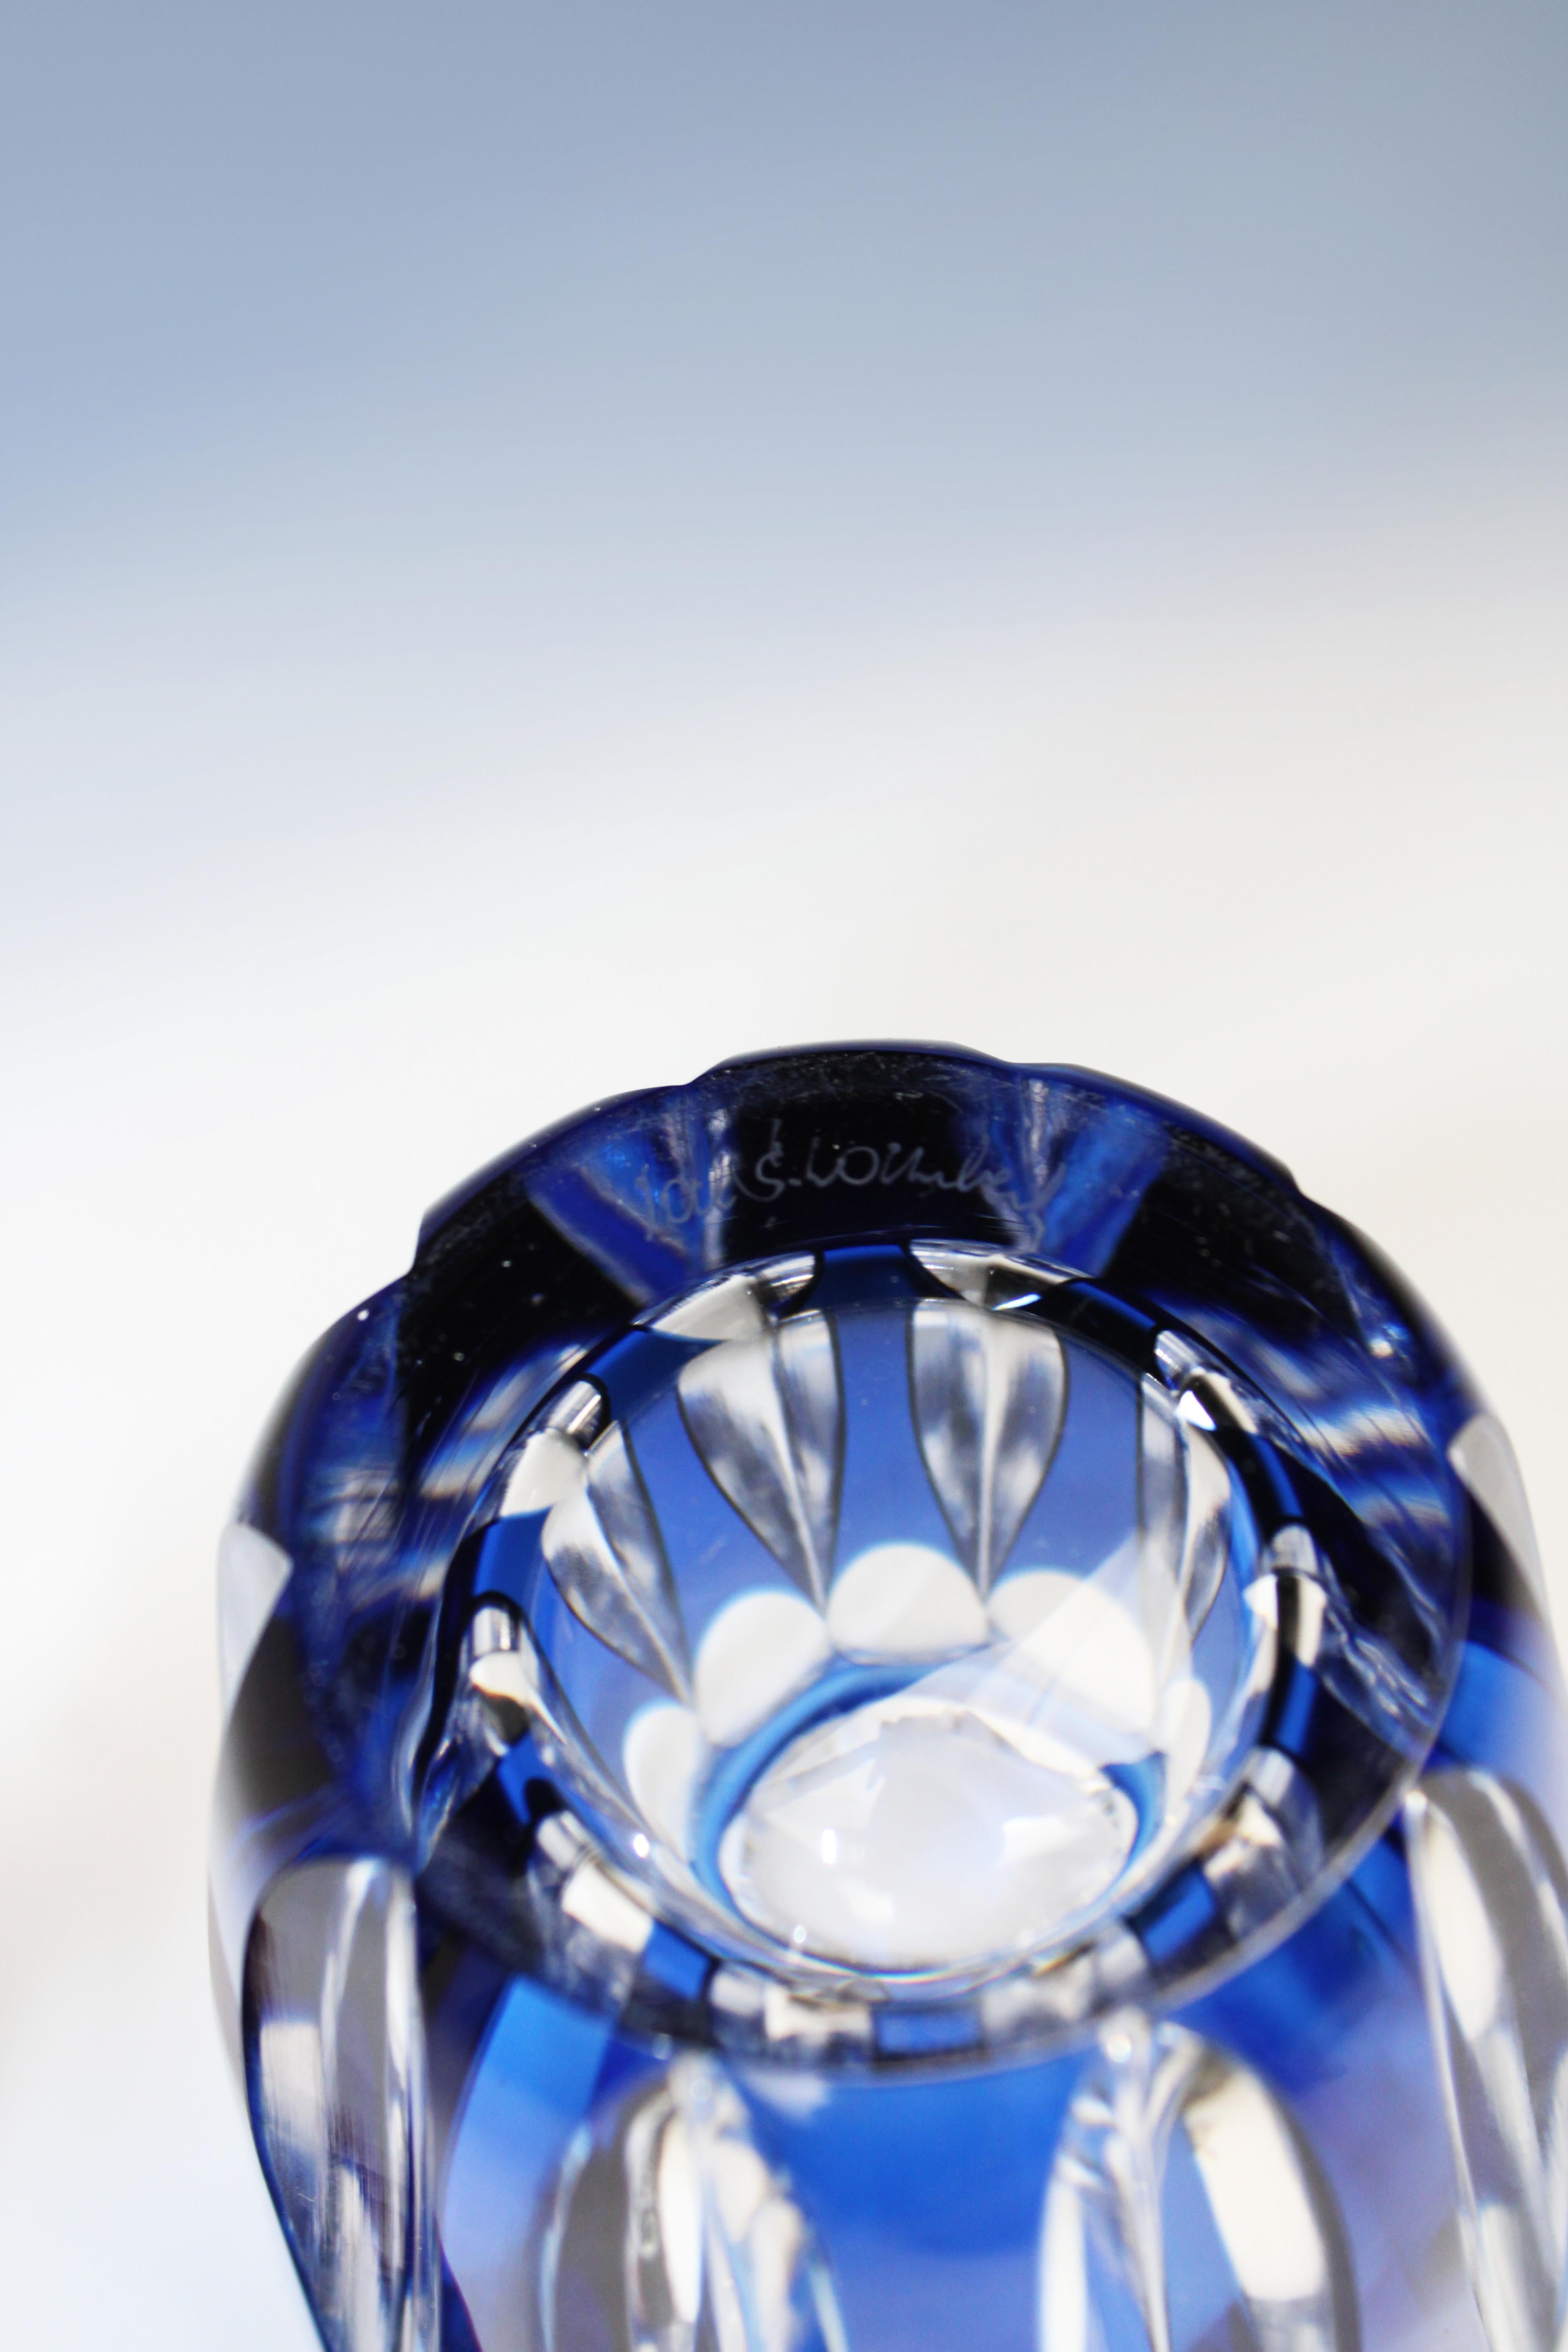 Belgian Val St Lambert Vase Art Glass Crystal Blue Art Deco Signed 1950's Belgium For Sale